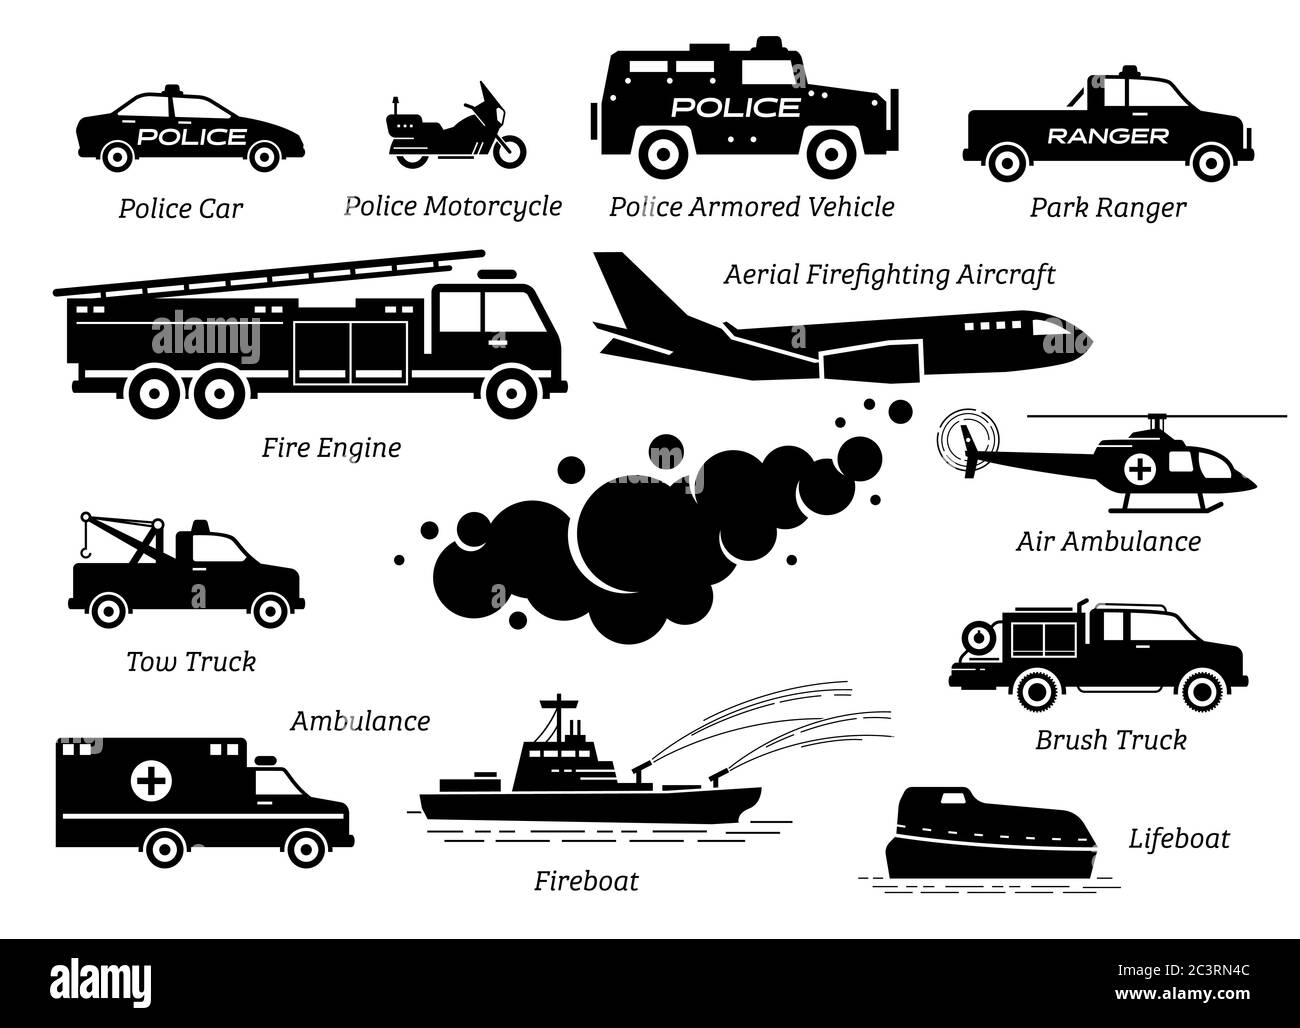 Liste der Notfallfahrzeuge Symbolsatz. Kunstwerk zeigt Polizeiauto, Polizei Motorrad, gepanzerte Fahrzeug, Feuerwehrauto, Krankenwagen, Rettungsboot, Helic Stock Vektor